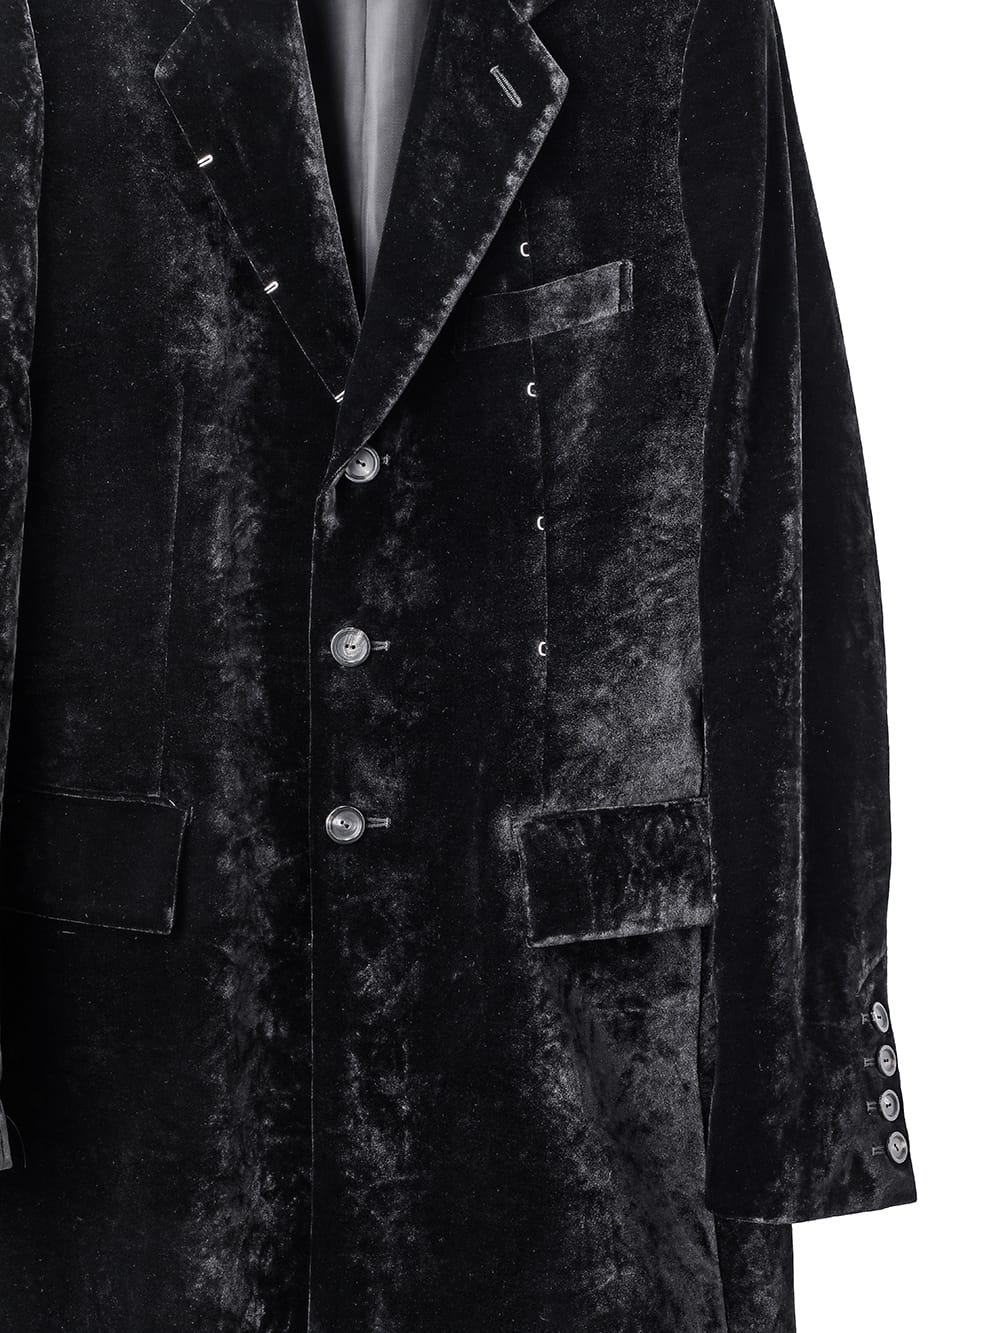 right - left chesterfield jacket.(velvet)